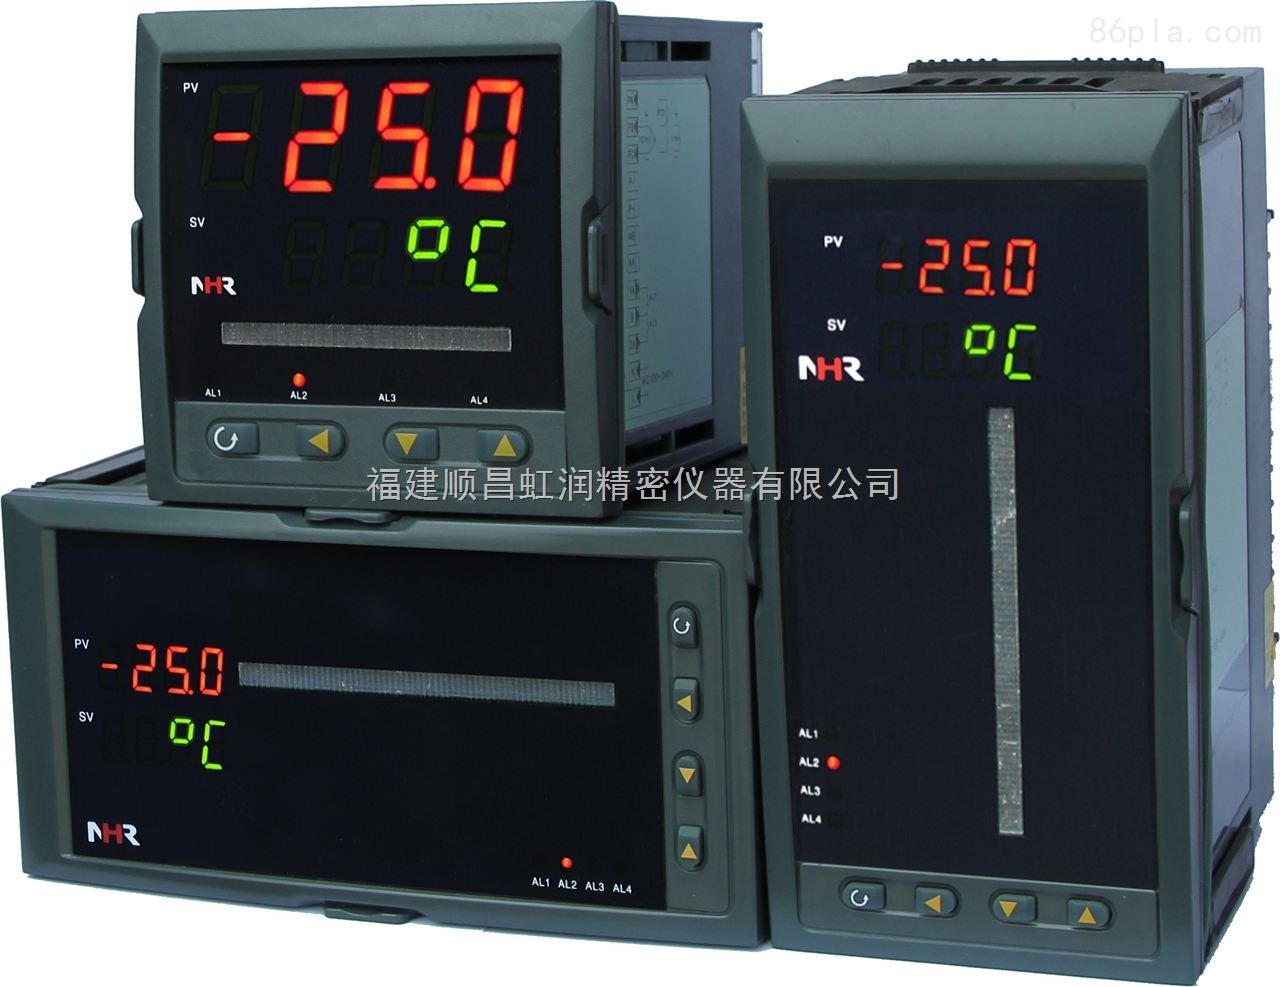 供應虹潤單回路數字顯示控制儀 專業生產數顯儀表